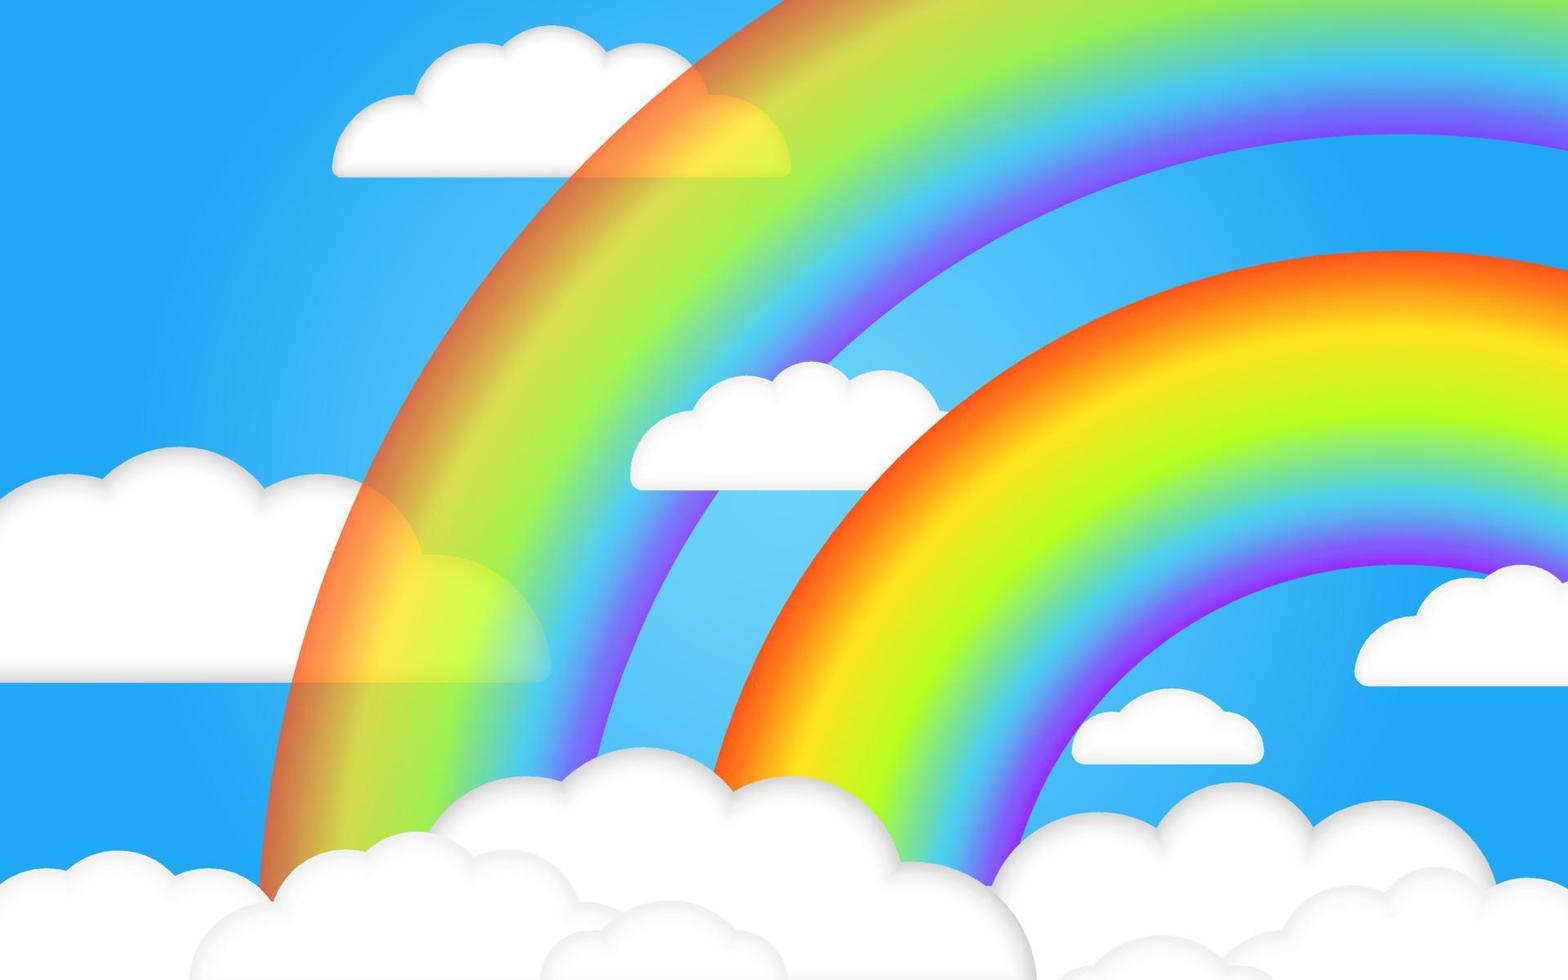 lindas nuvens 3d de verão no céu azul com arco-íris 3d transparente realista. ilustração vetorial de crianças. estilo tridimensional. lugar para texto. crianças ilustração dos desenhos animados para flyer ou banner. vetor